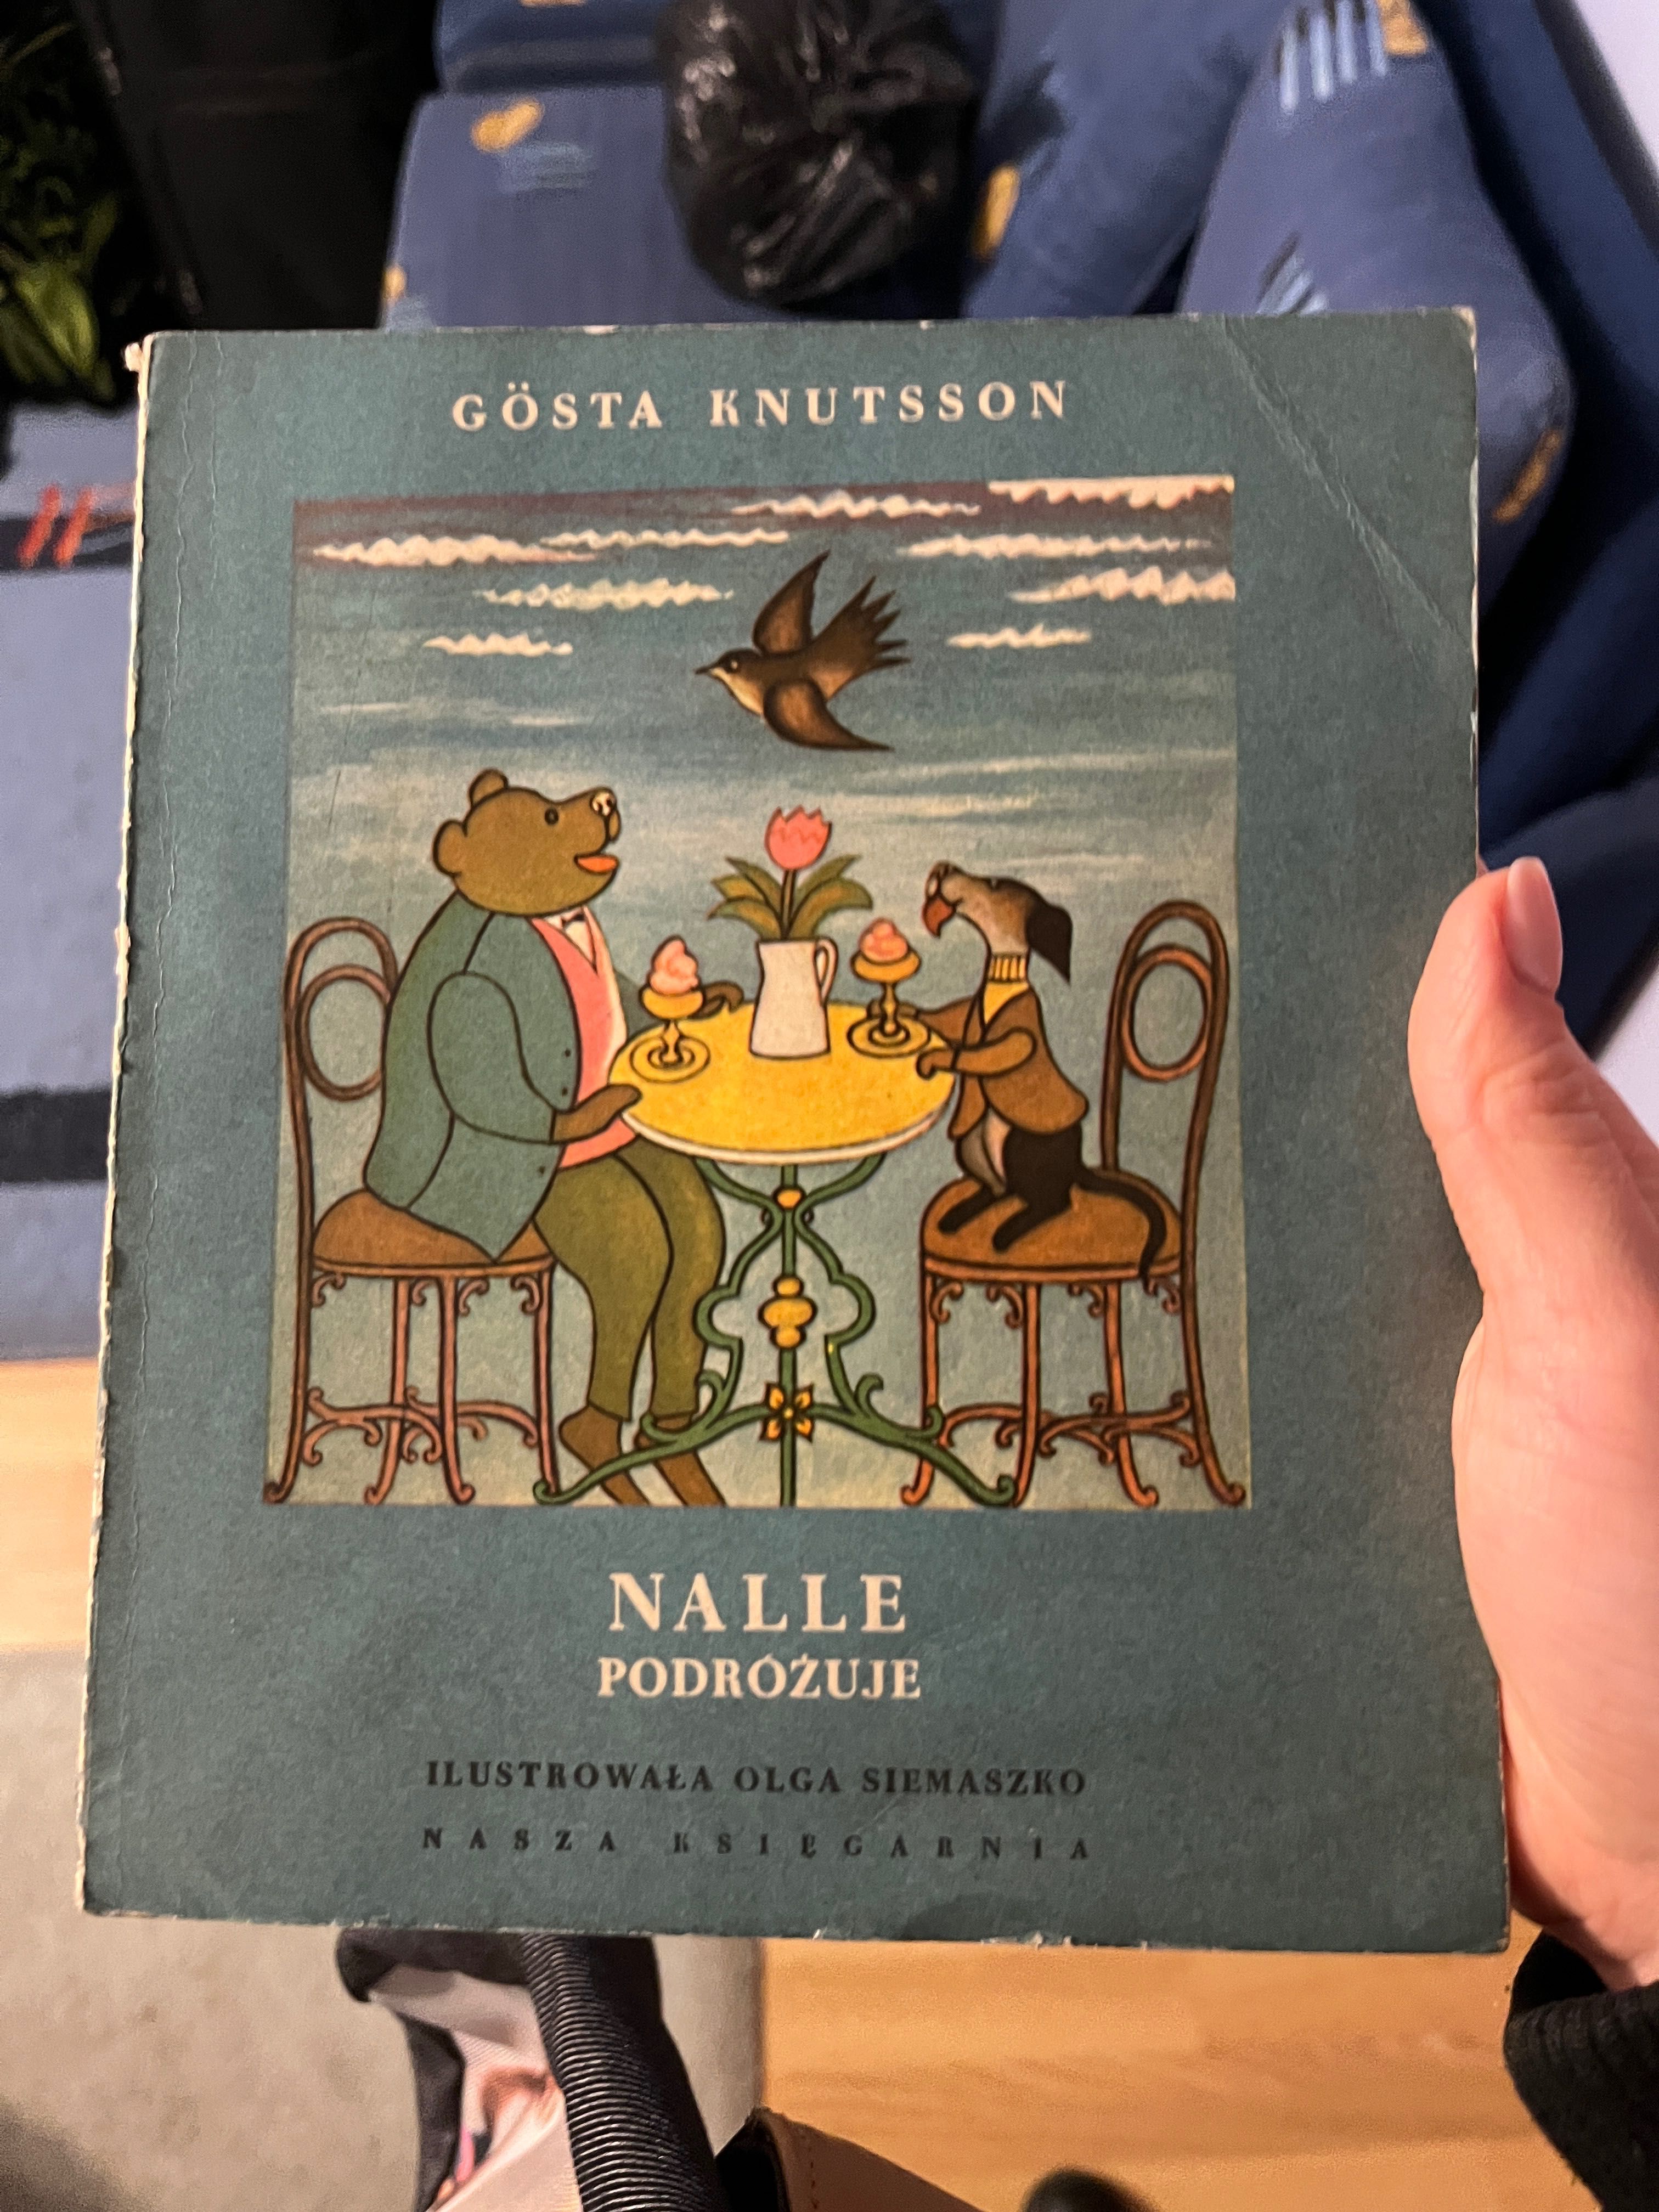 Nalle podróżuje - książka